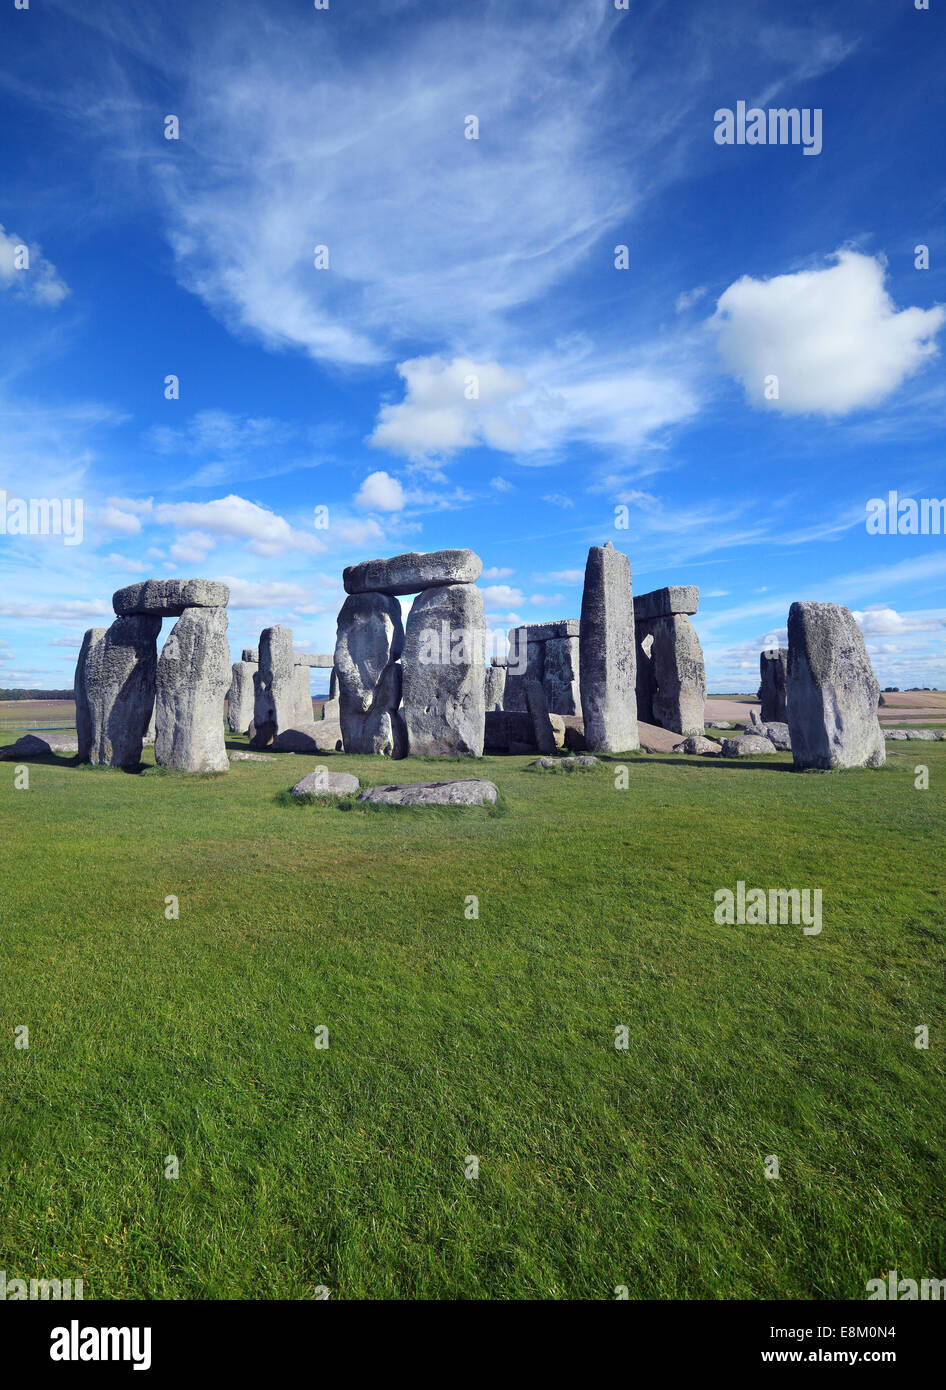 Stonehenge prehistoric monument in Wiltshire England. Stock Photo